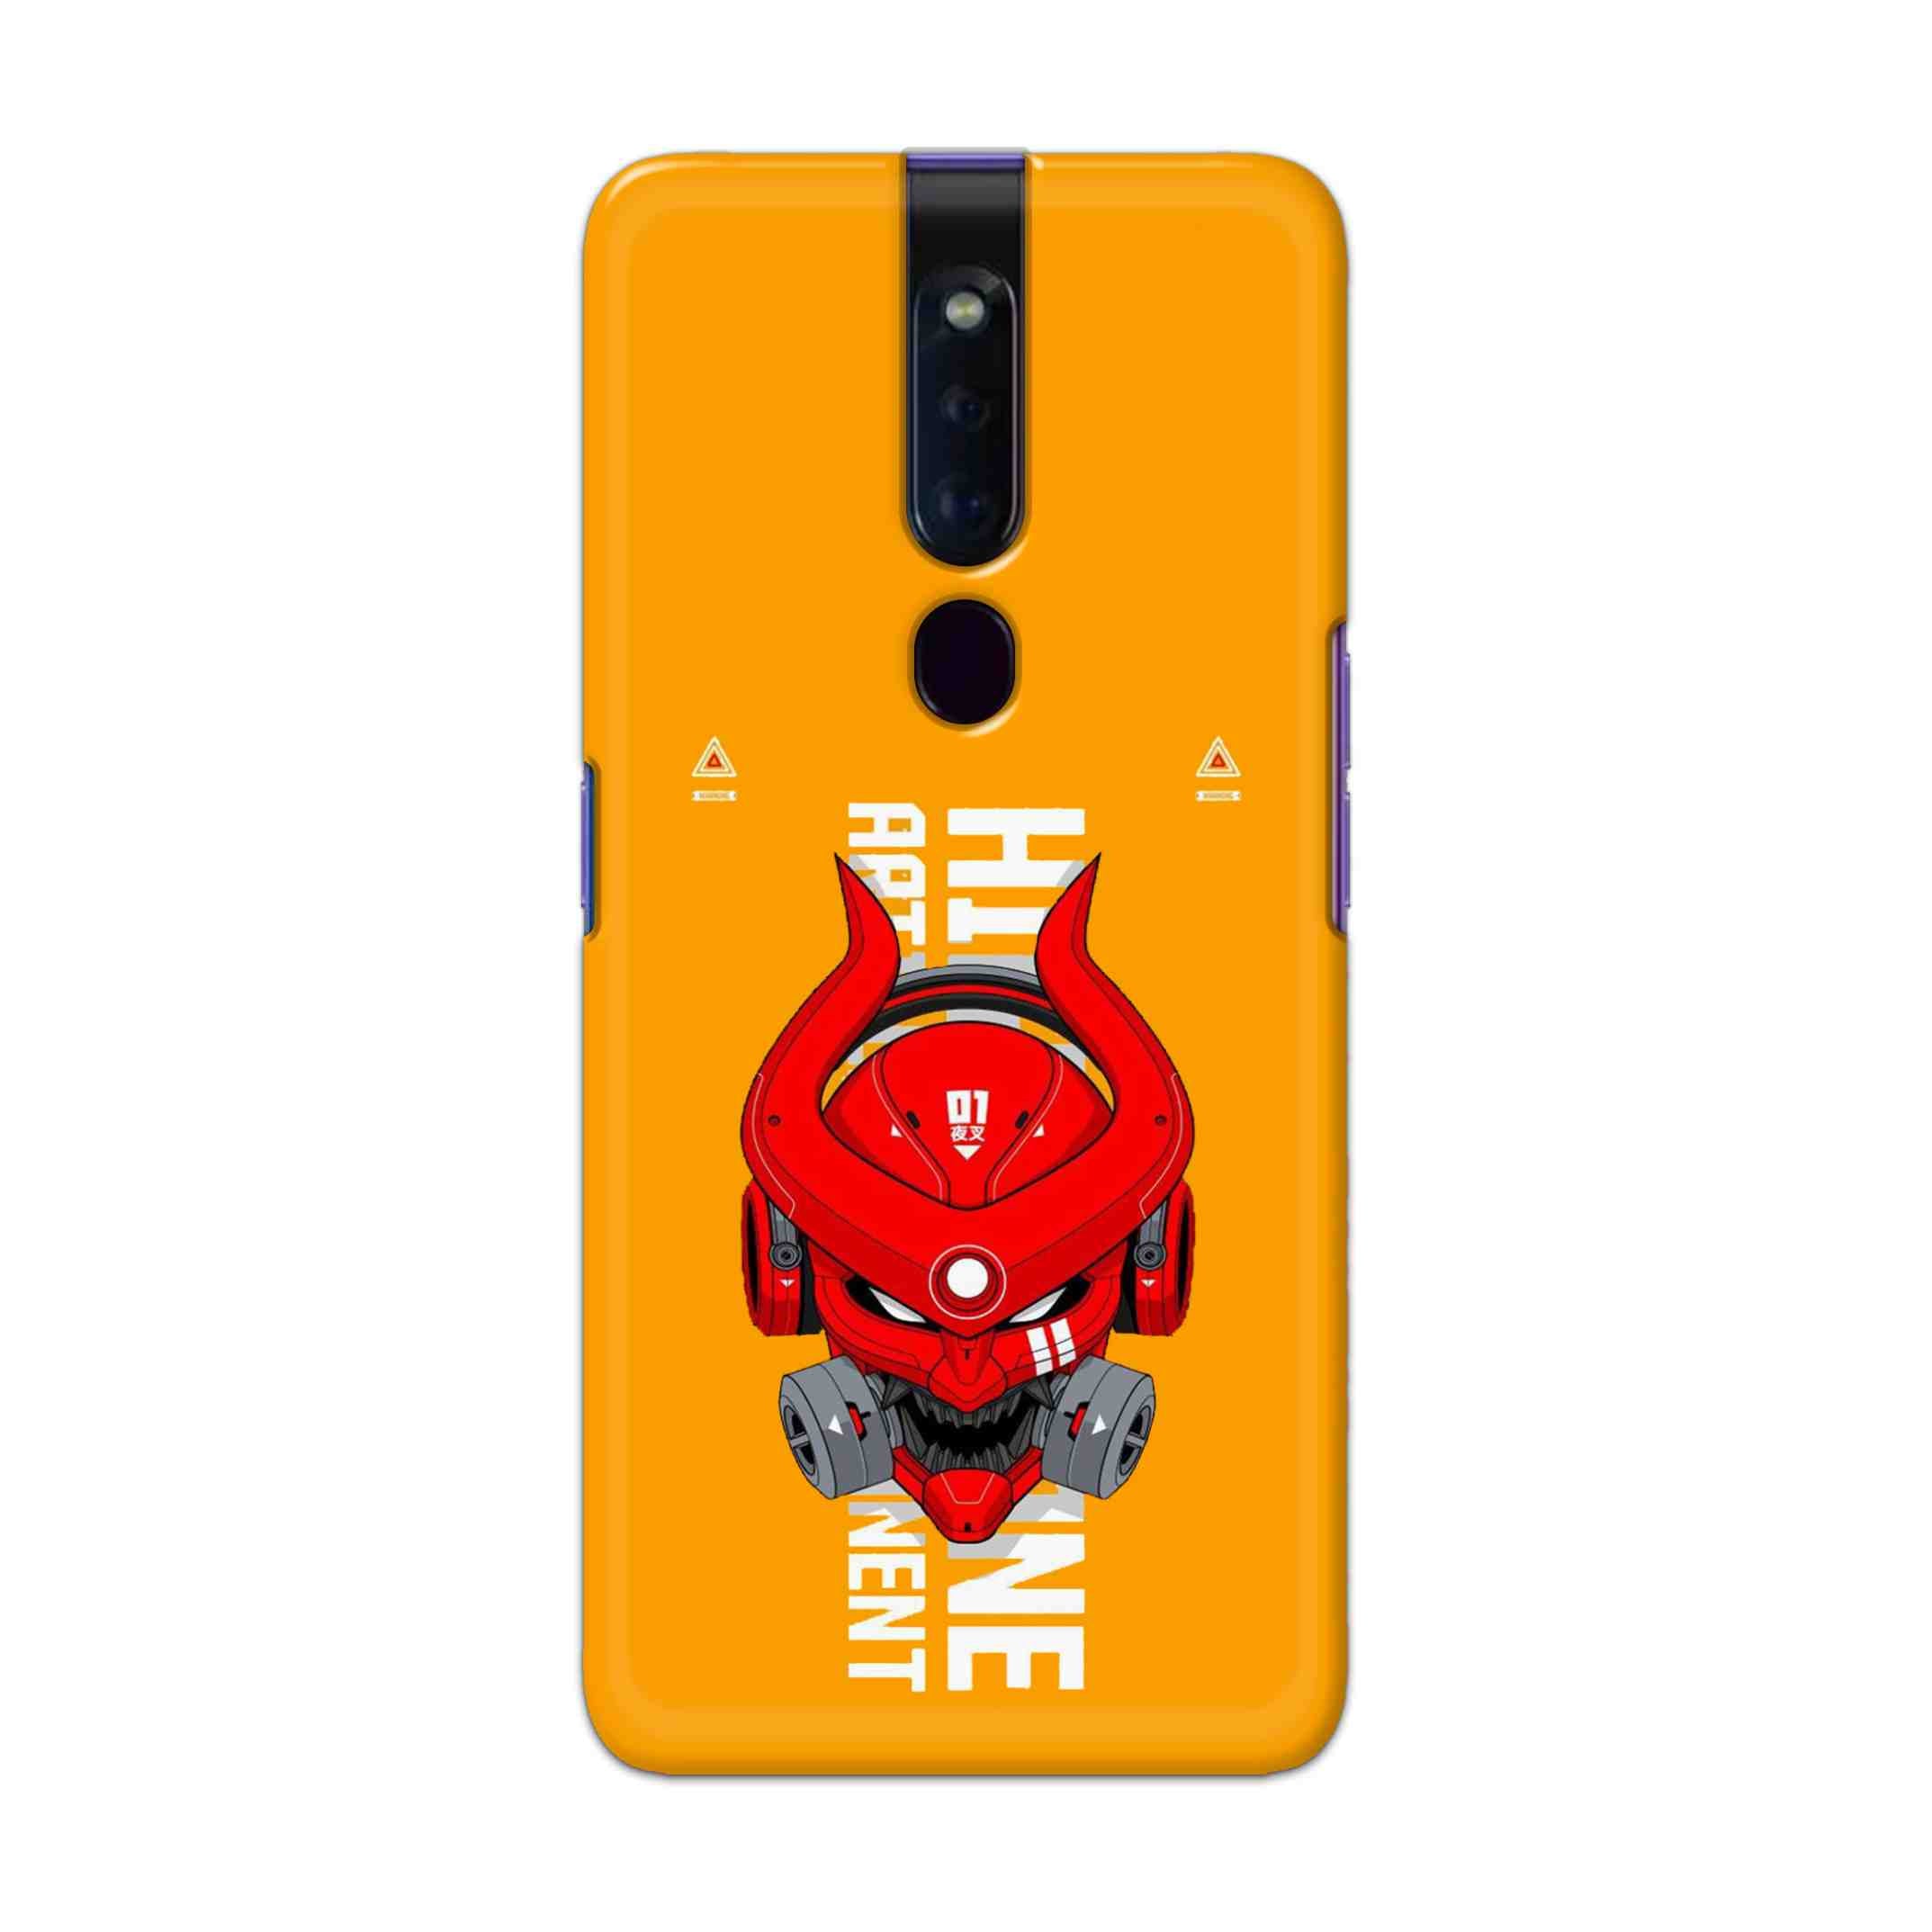 Buy Bull Skull Hard Back Mobile Phone Case Cover For Oppo F11 Pro Online